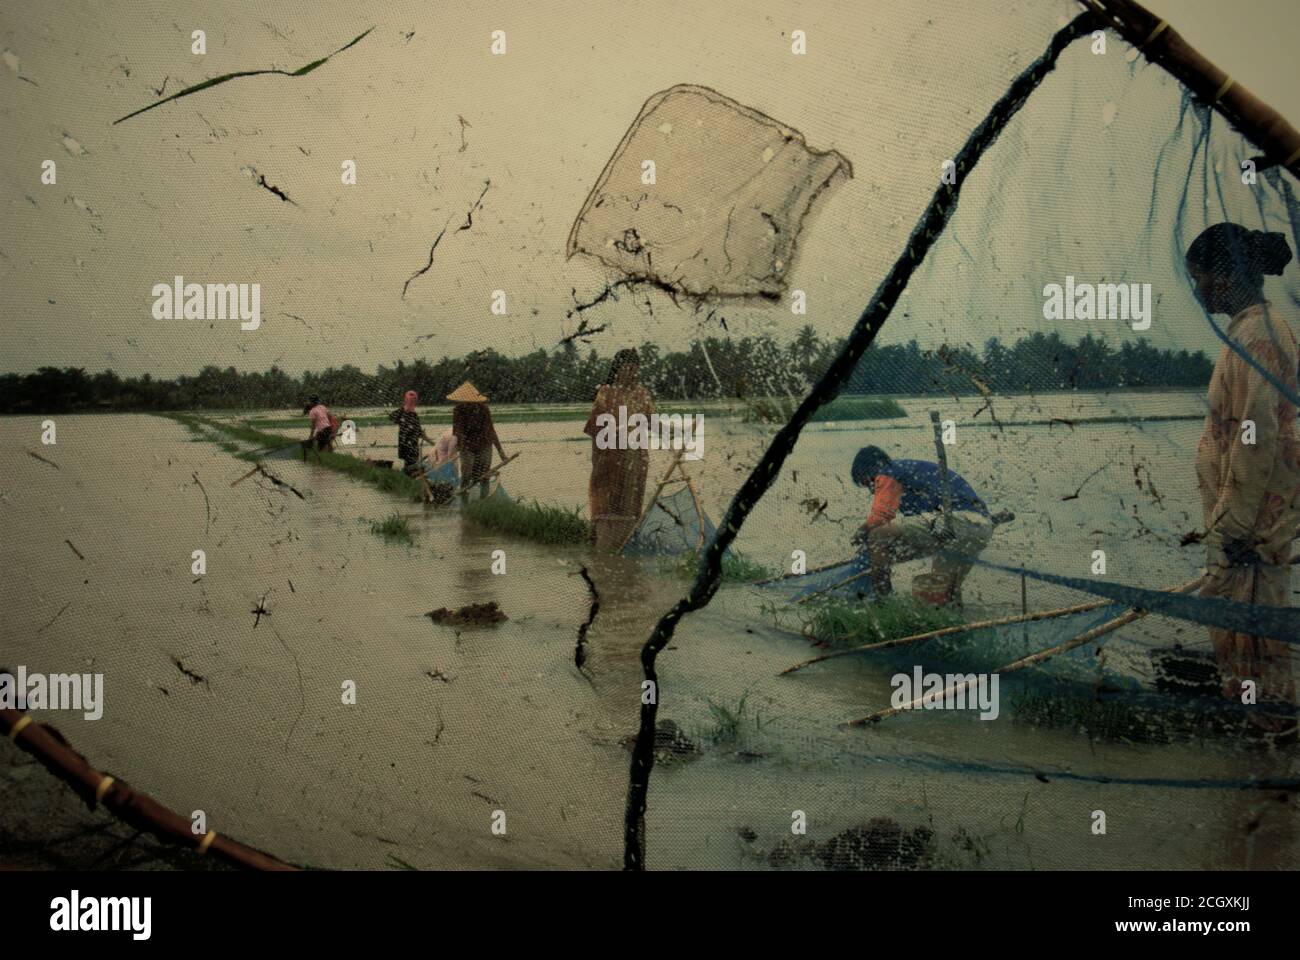 Les personnes pêchant sur un champ de riz inondé avec des pushnets pendant une saison des pluies qui a causé des inondations à Karawang regency, province de Java Ouest, Indonésie. Banque D'Images